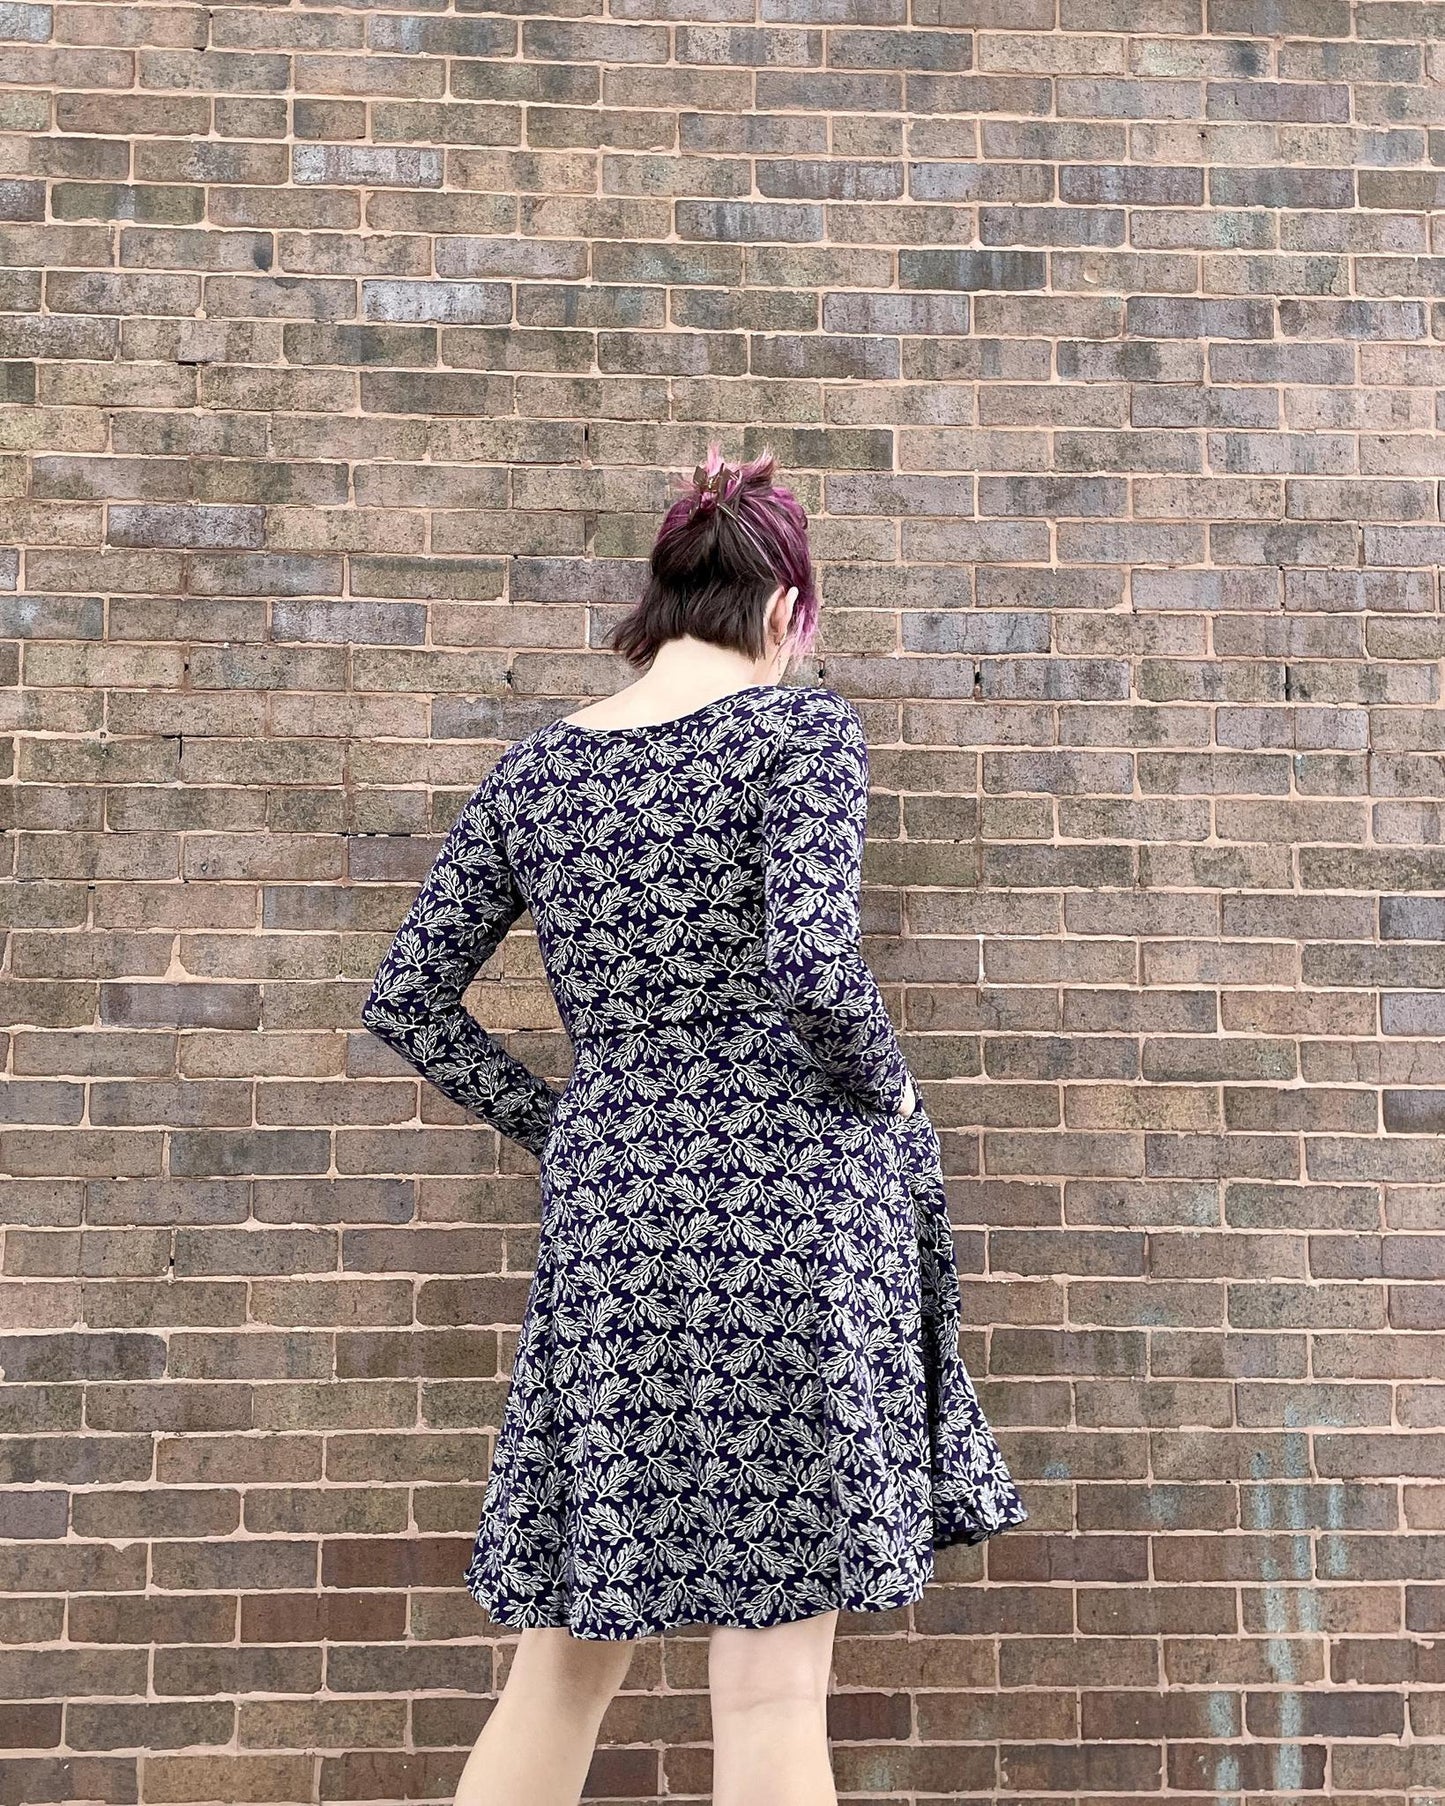 Effie's Heart Easy Dress Elm Print - SALE - Large, XL, 2XL